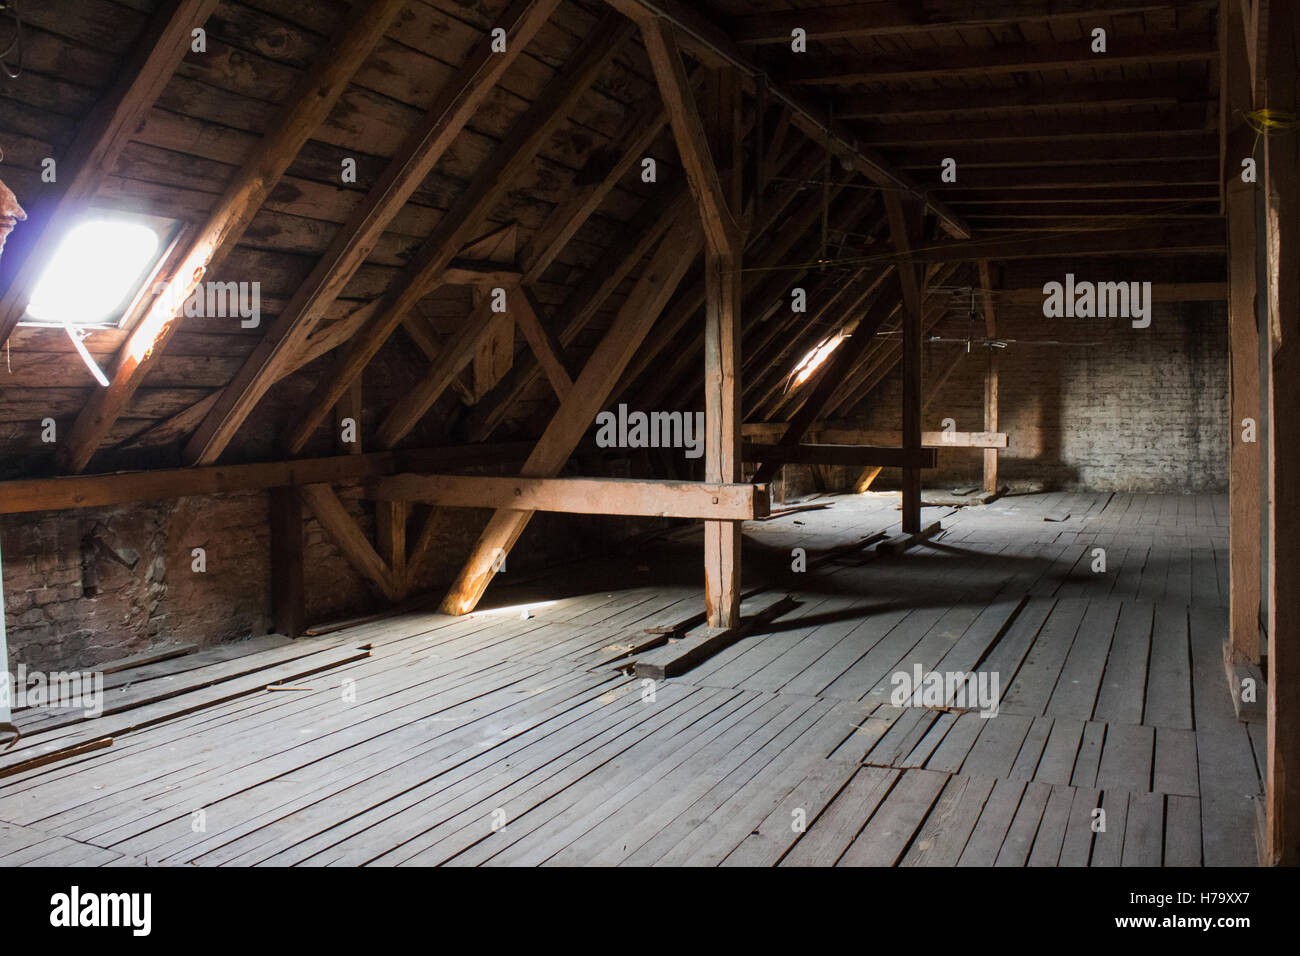 Tetto, travi in legno vecchio loft / tetto prima costruzione Foto Stock